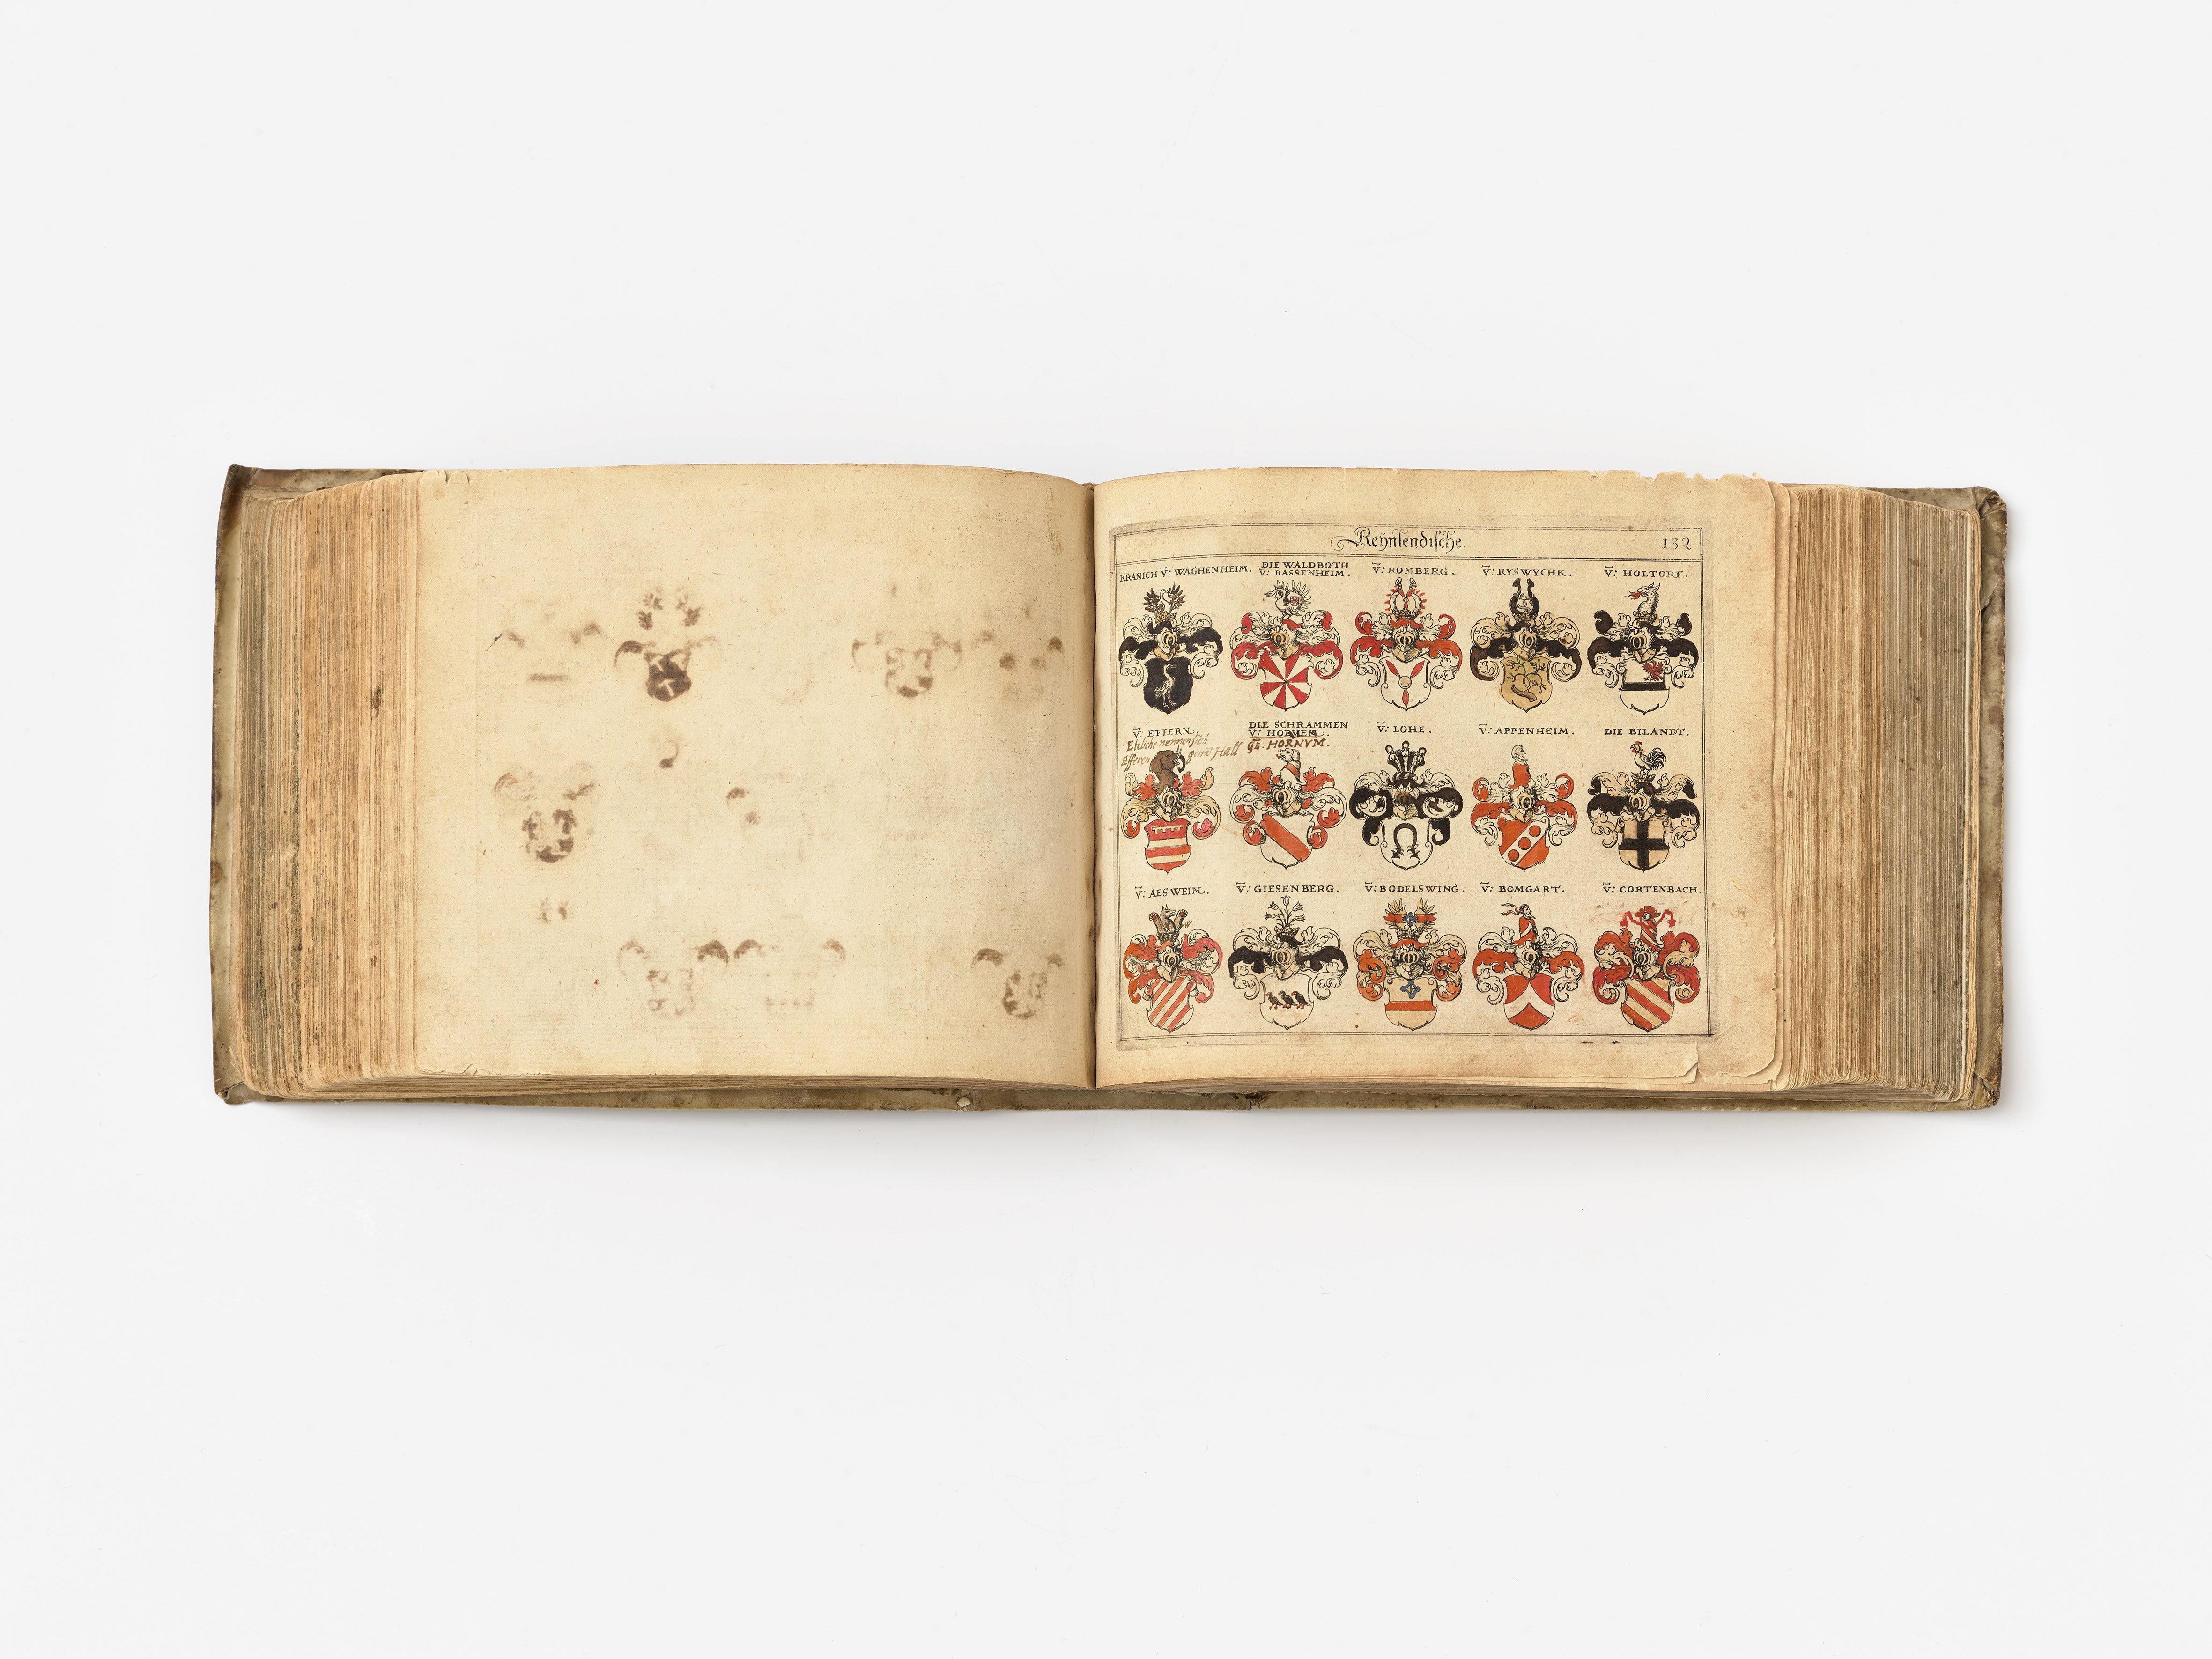 Siebmacher Wappenbuch, 1605 (Städtisches Museum Schloss Rheydt CC BY)